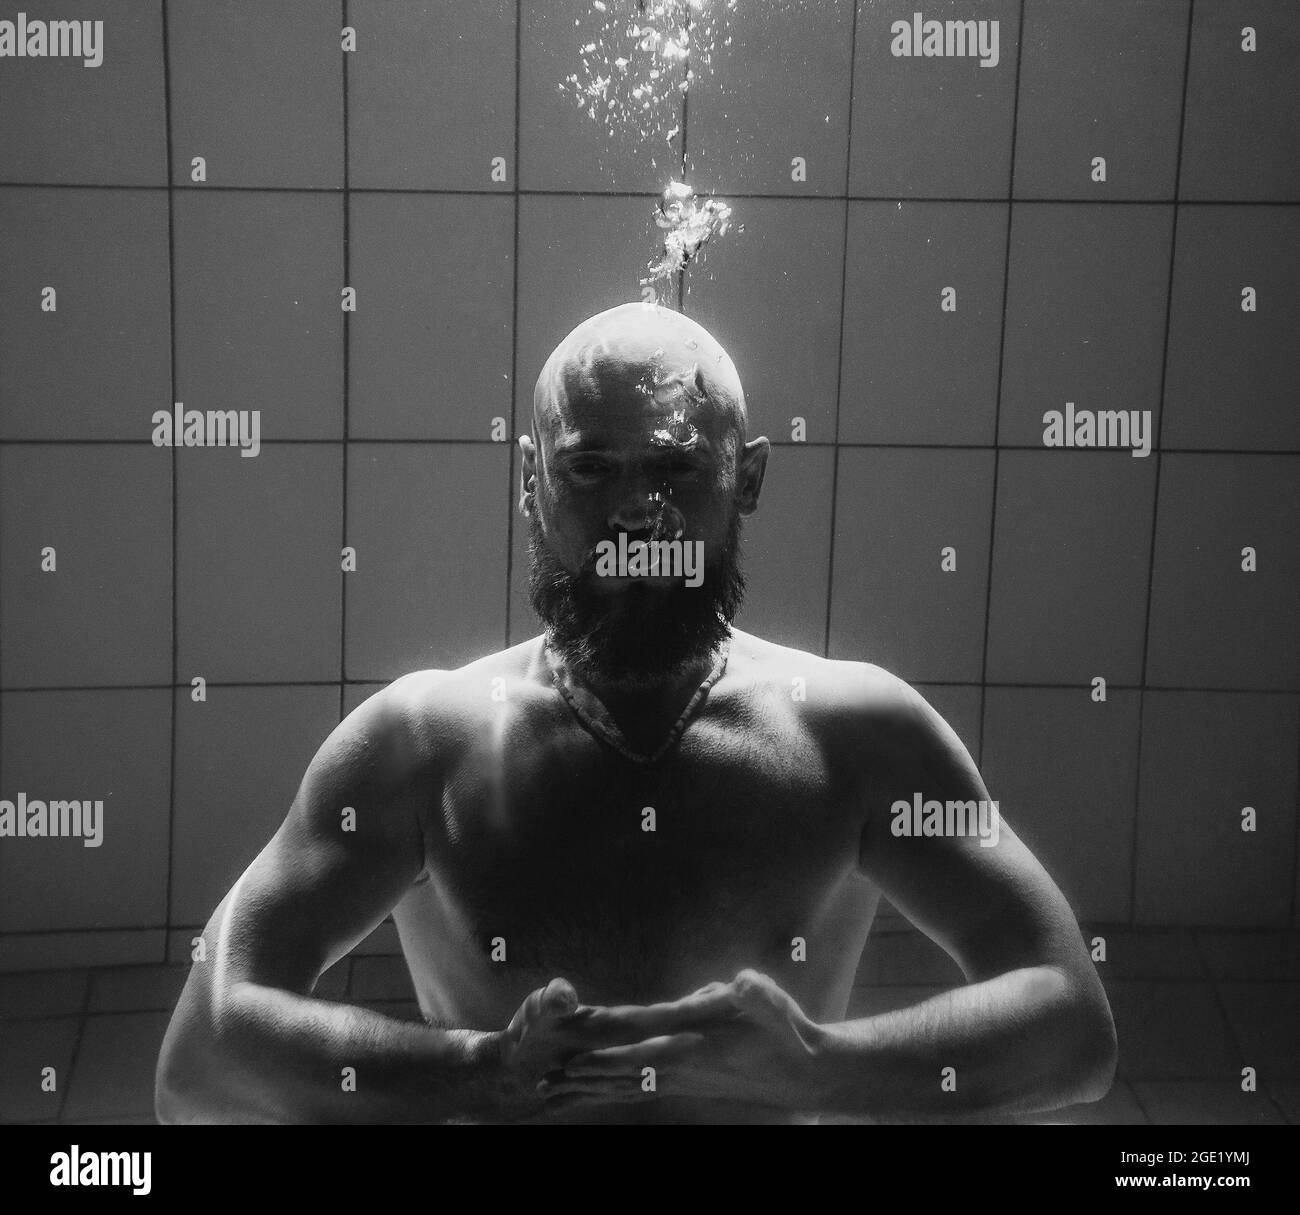 Sportler unter Wasser im Schwimmbad Stockfoto